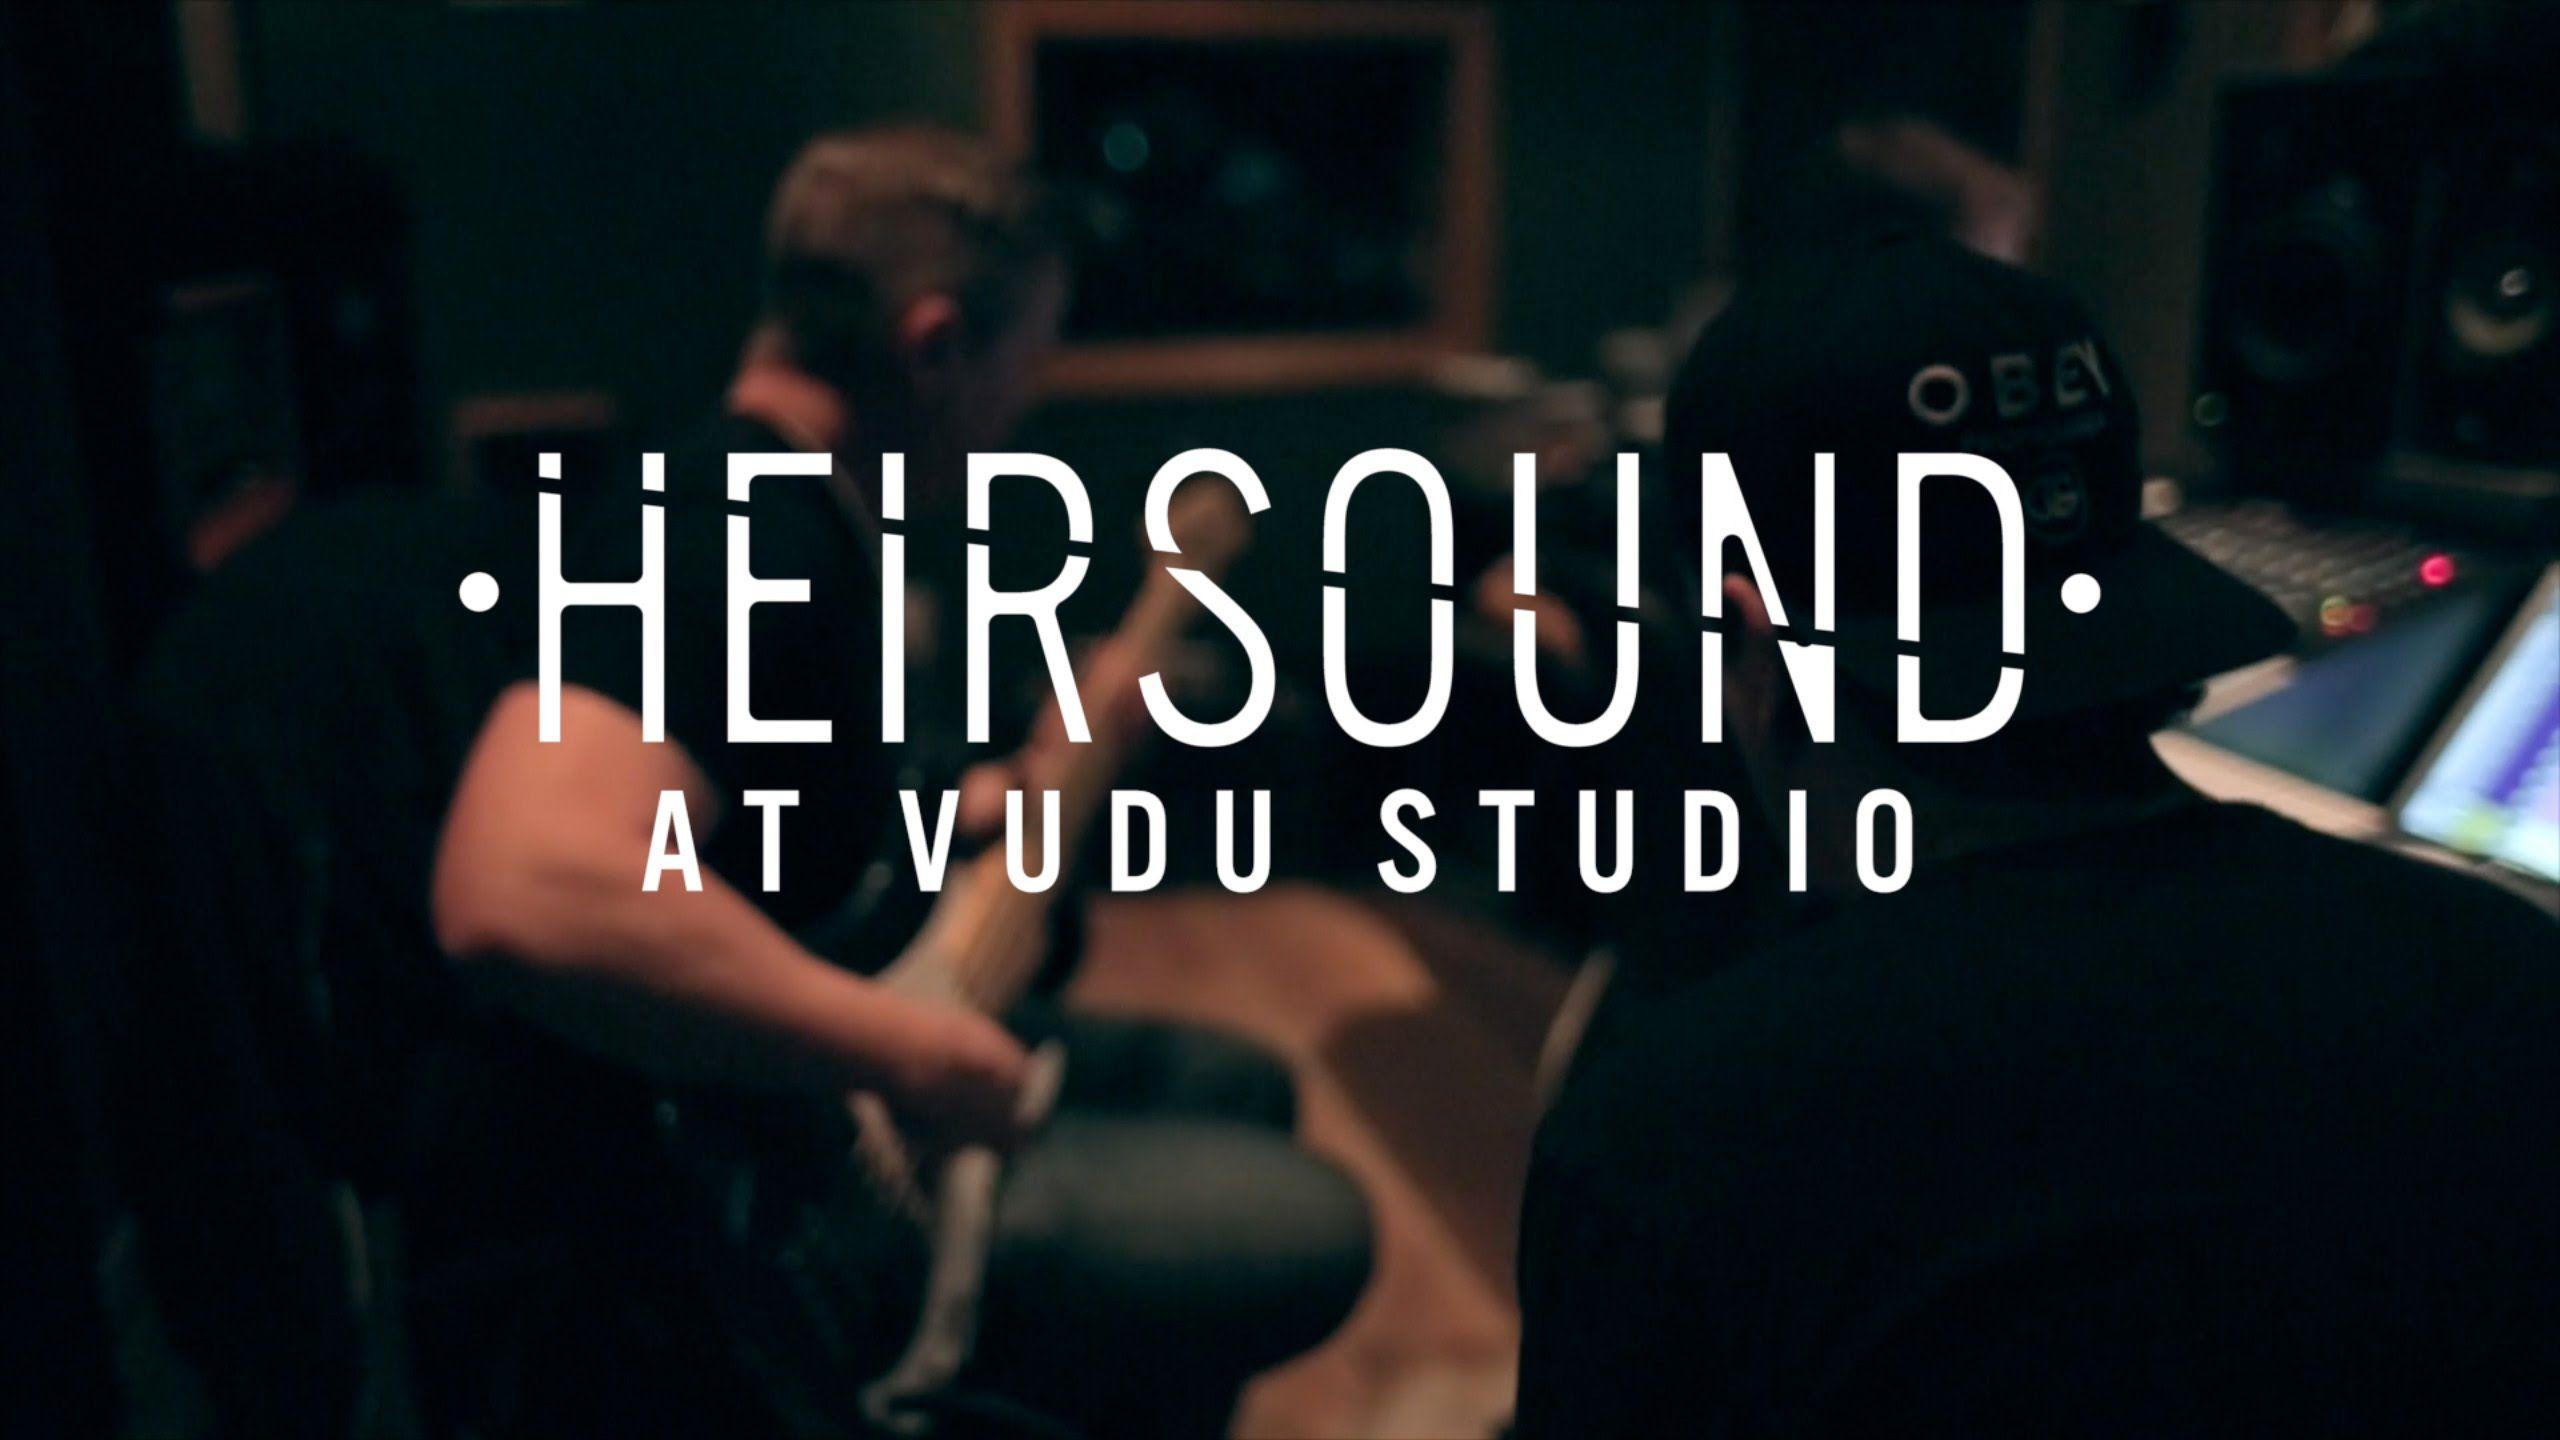 HEIRSOUND Vudu Studio